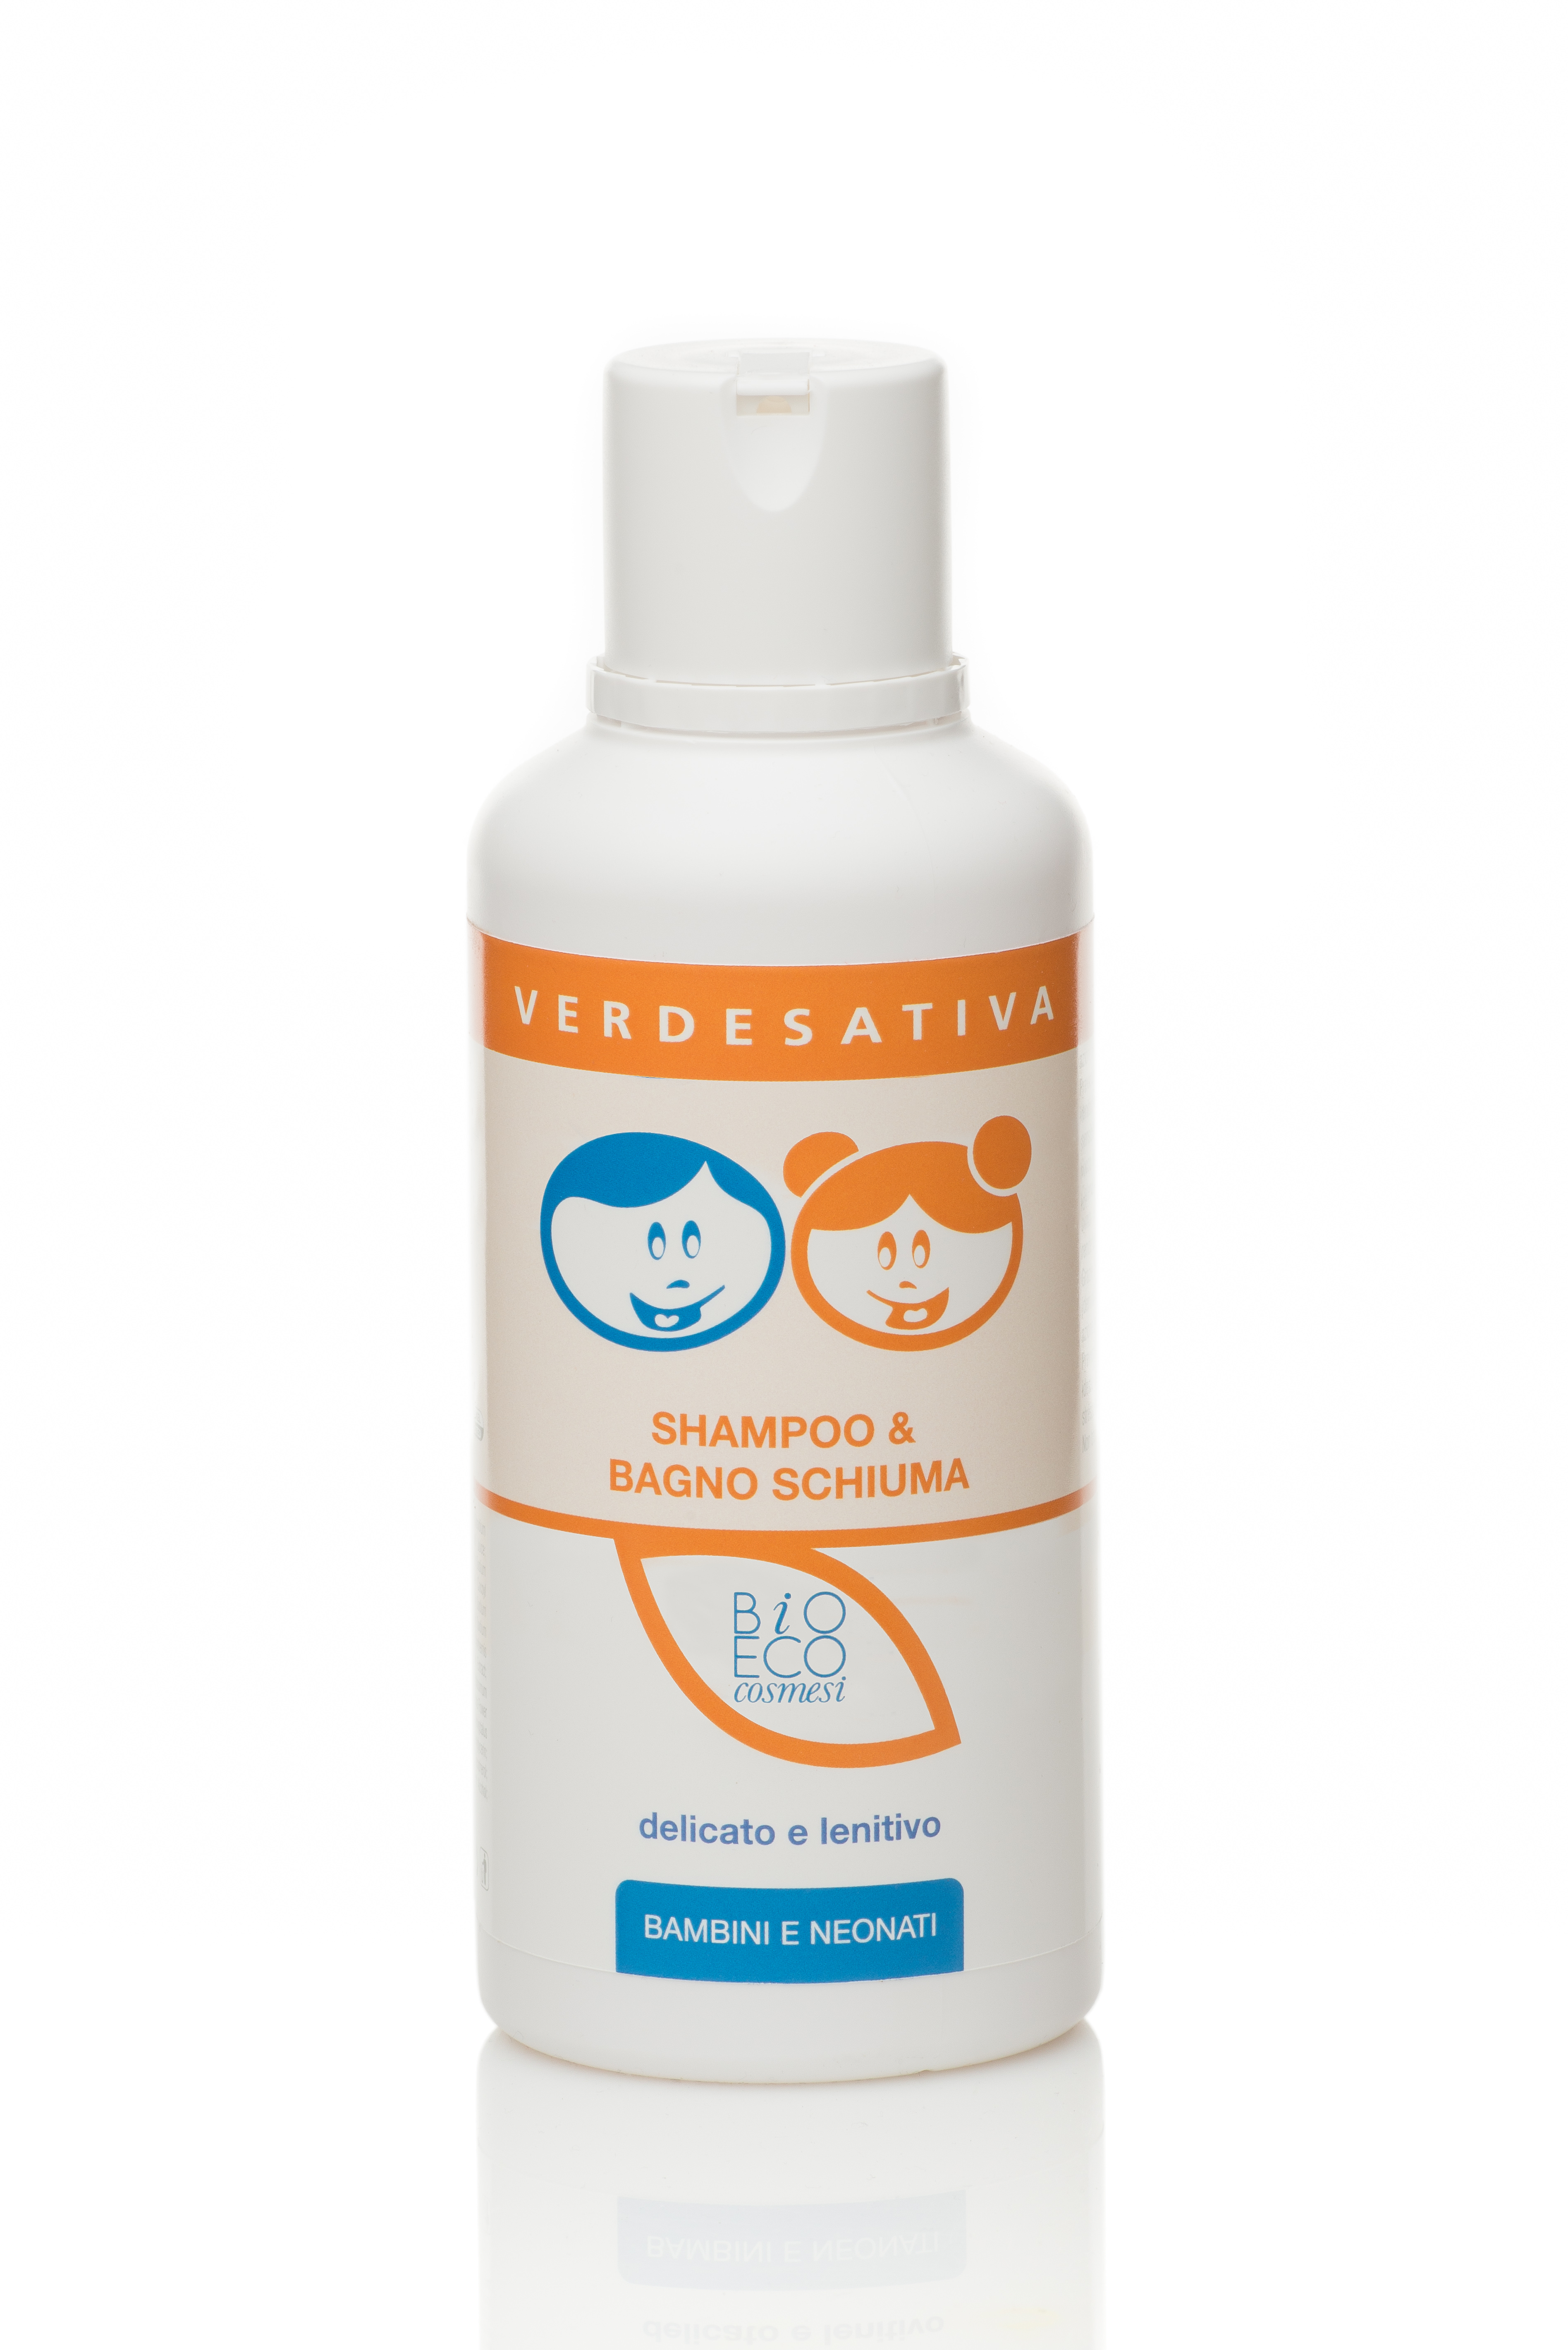 Baby Shampoo & Bagno Schiuma 100% naturale e bio degradabile - 500ml